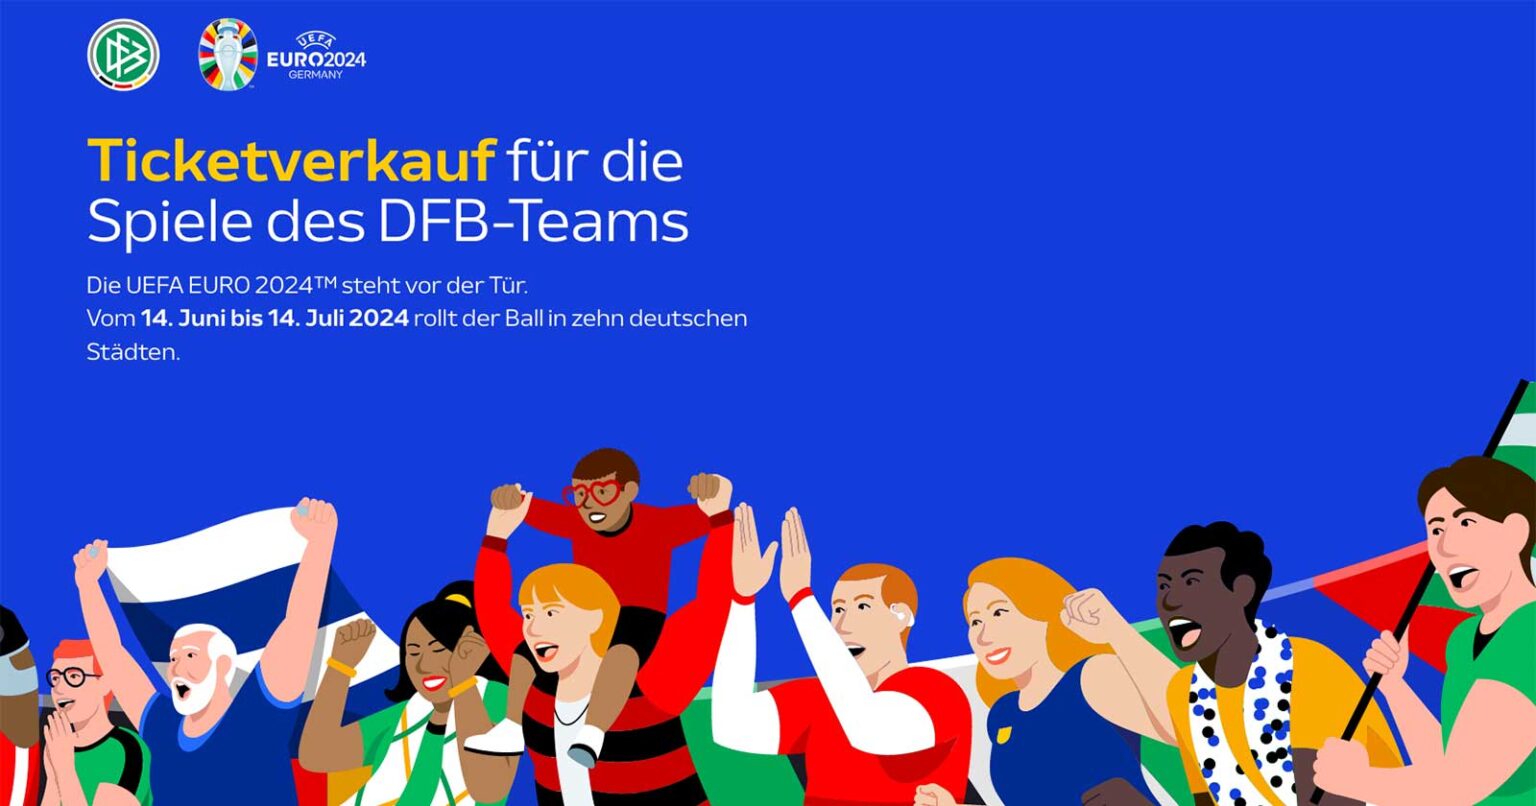 Nächste Verkaufsphase für EMTickets für deutsche Spiele Die Fußball